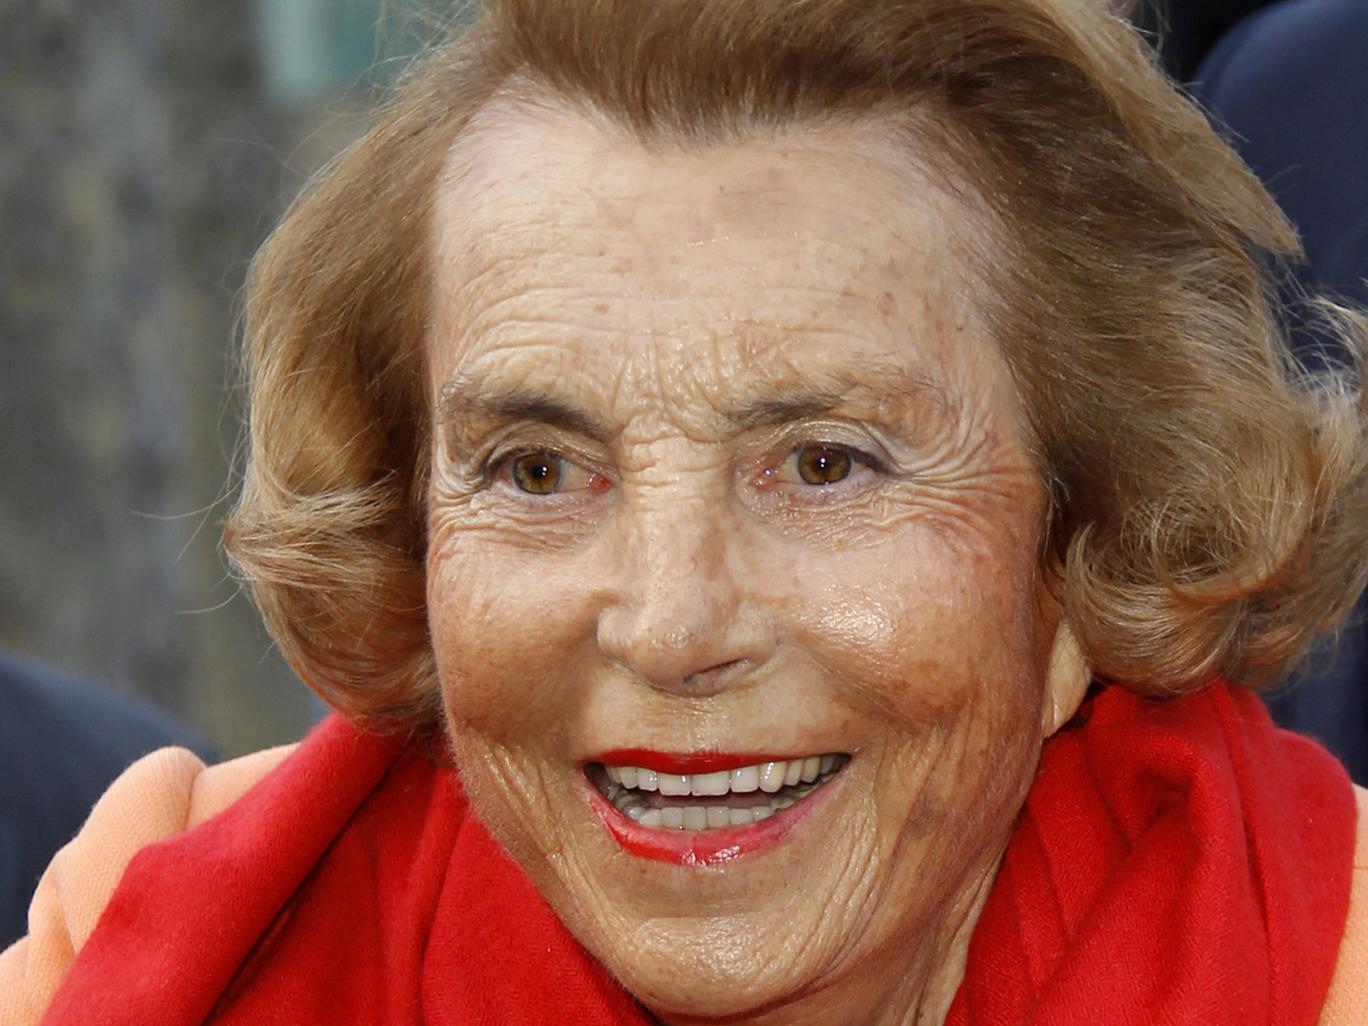 world's richest woman Liliane Betterncourt dies